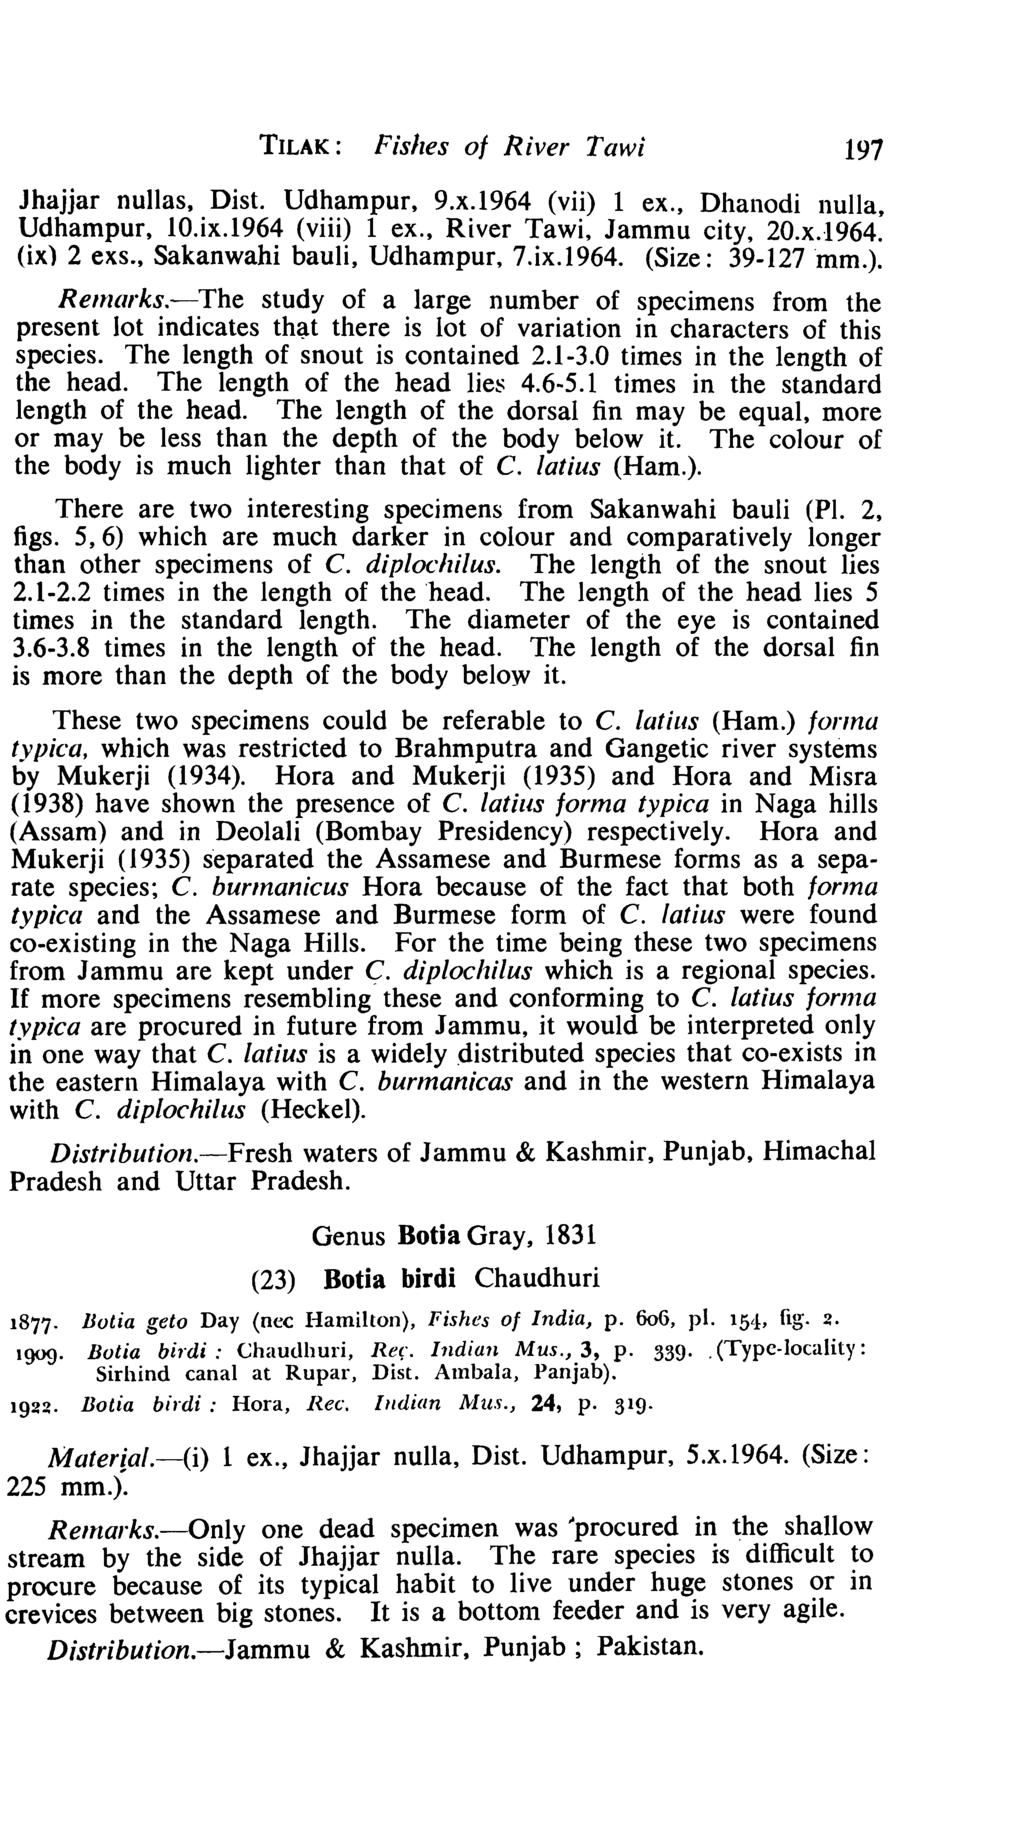 TILAK: Fishes of River Taw; 197 Jhajjar nullas, Dist. Udhampur, 9.x.1964 (vii) 1 ex., Dhanodi nulla, Udhampur, 10.ix.1964 (viii) 1 ex., River Tawi, Jammu city, 20.x.1964. (ix) 2 exs.